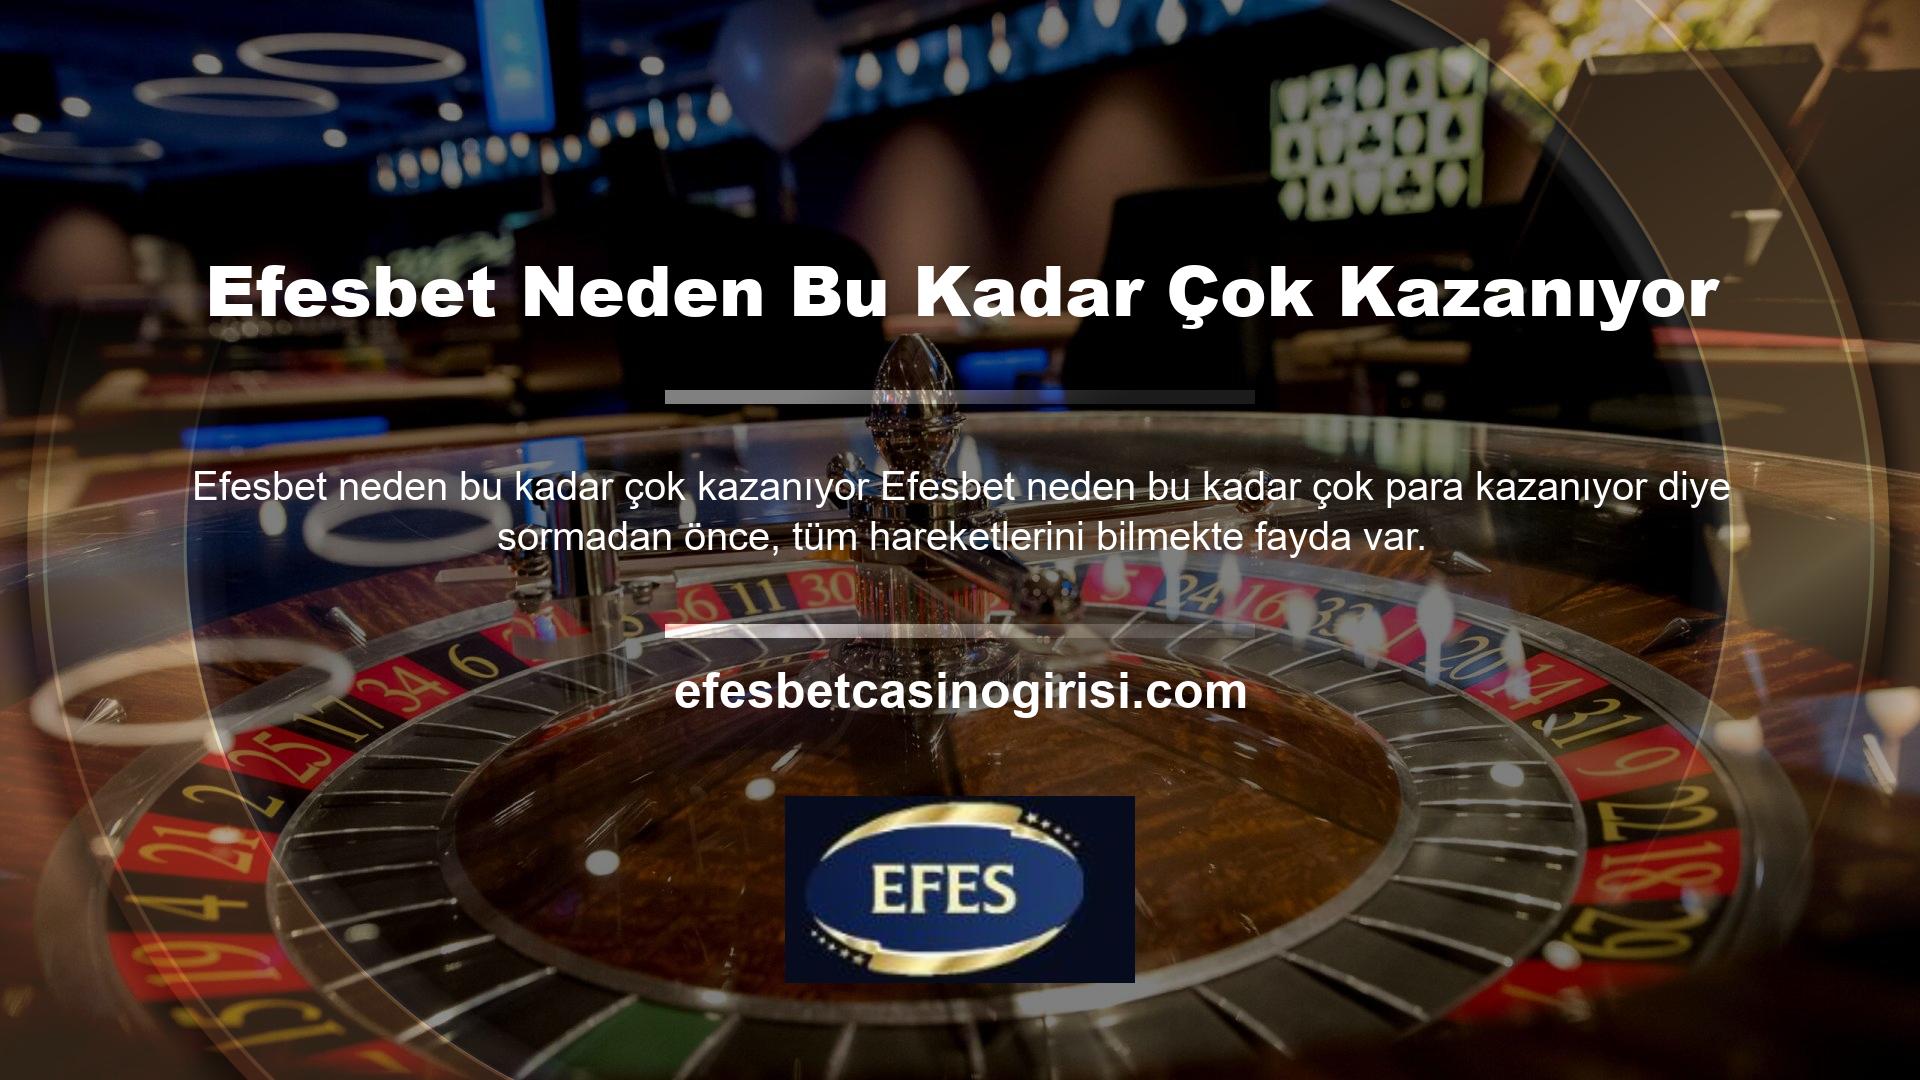 Efesbet casino oyunları ve bahis bölümünde hizmet veren bir bahis platformudur